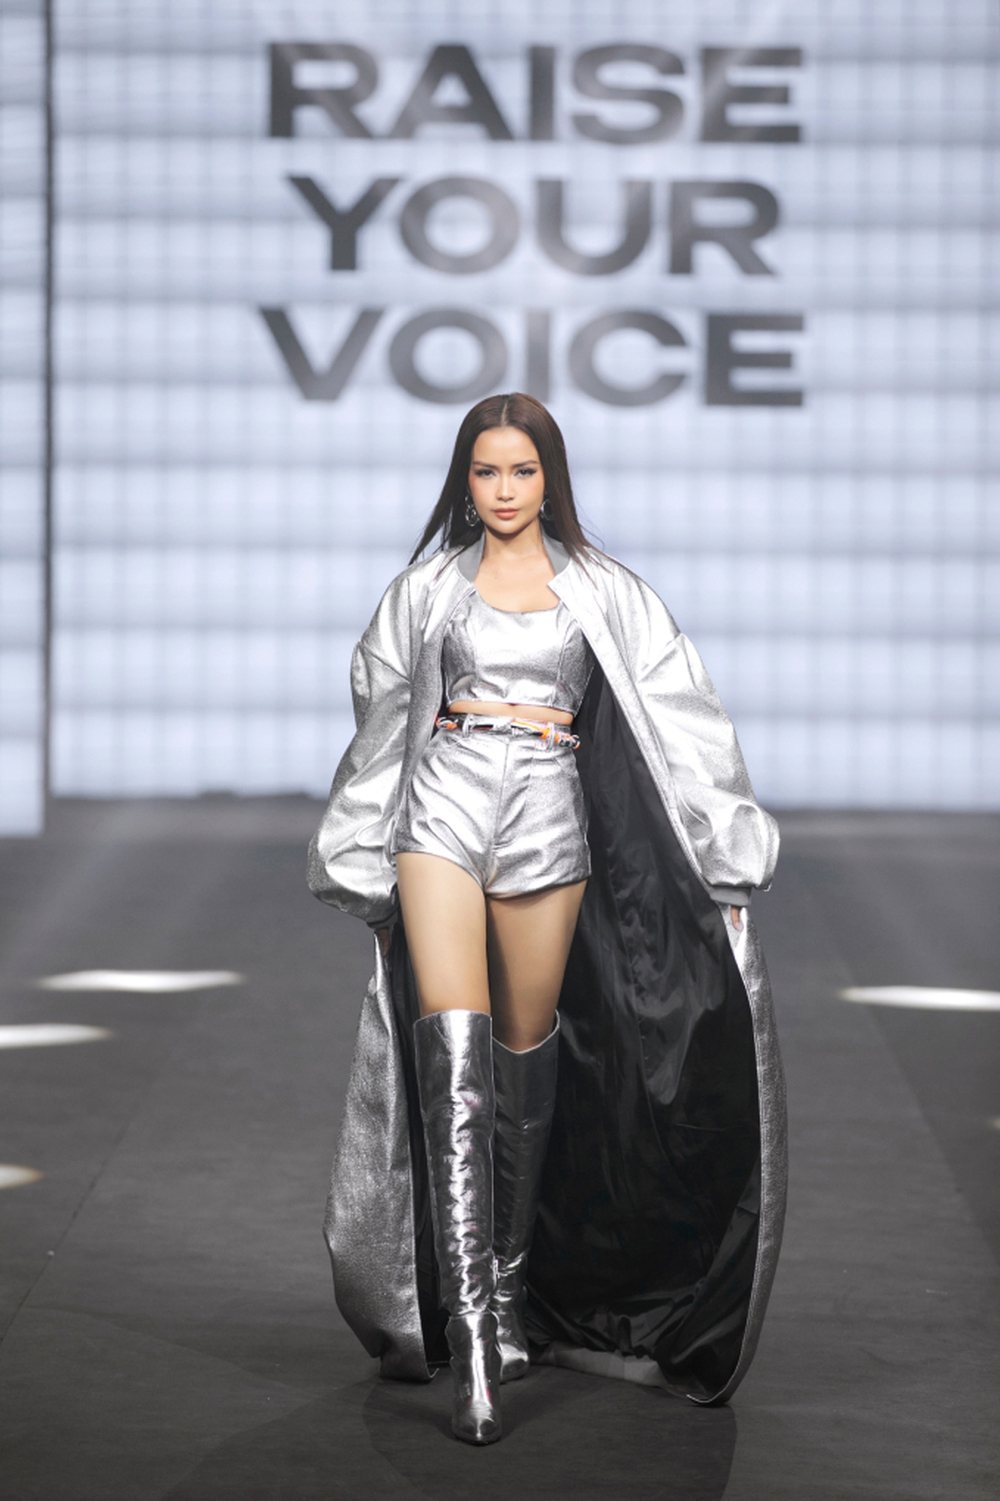 Hoa hậu Ngọc Châu mặc áo choàng quét đất, catwalk đầy quyền lực trong show Cảm hứng Việt Nam - Ảnh 3.